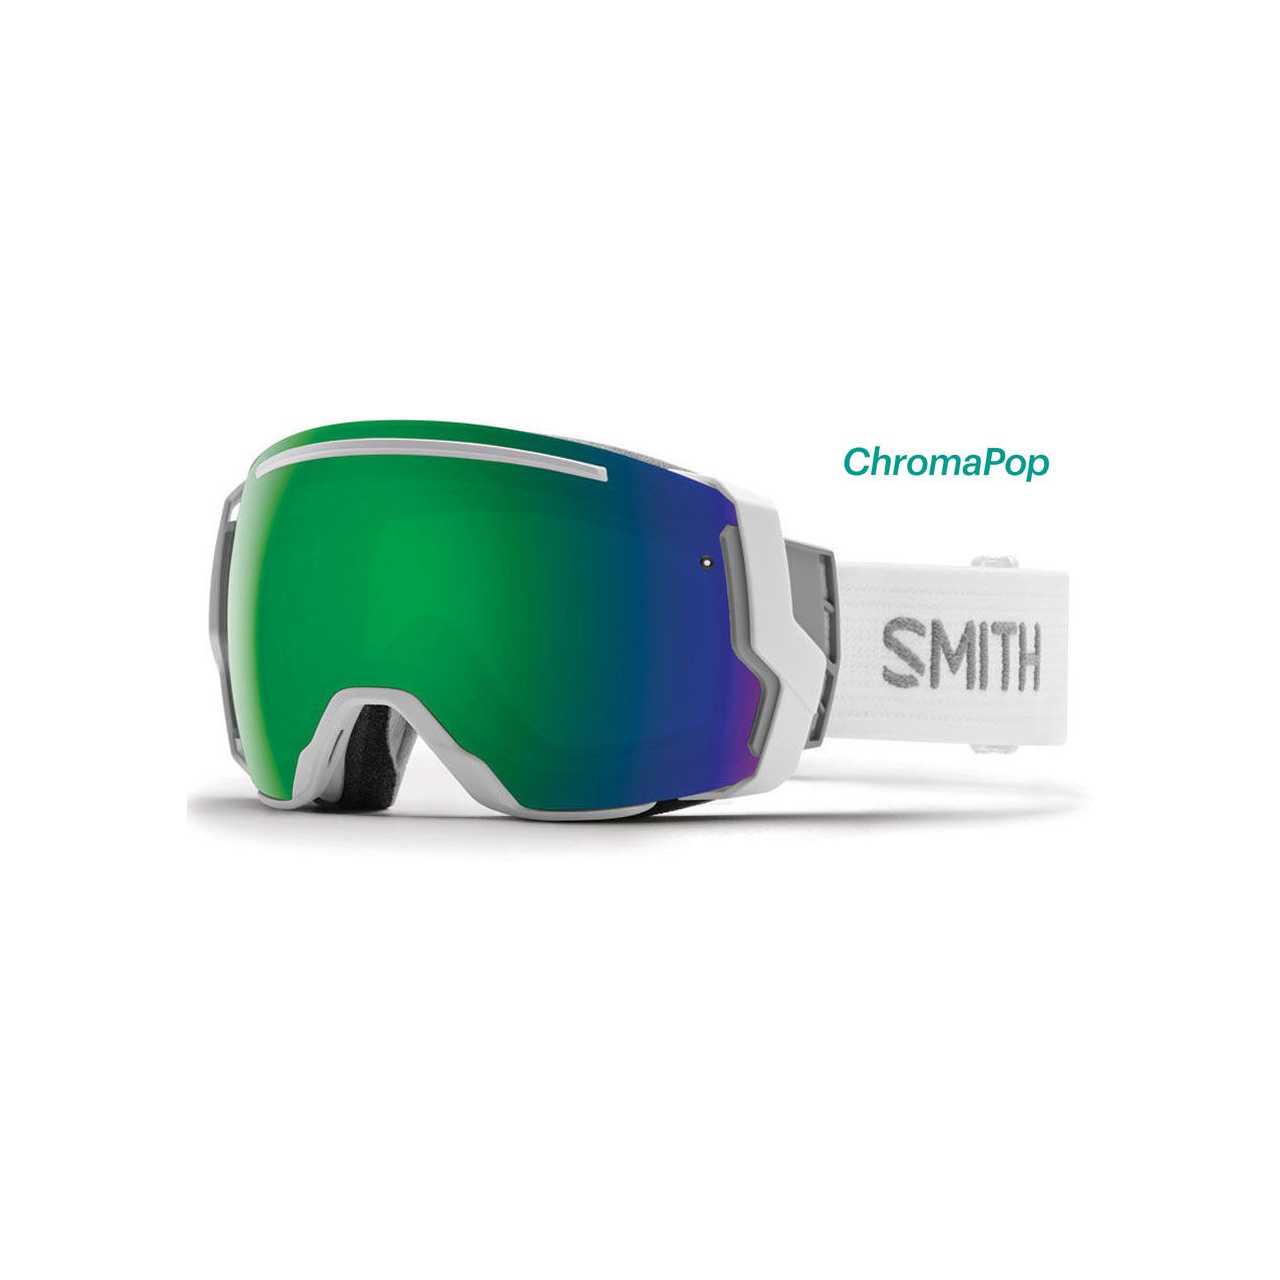 Smith I/O 7 ChromaPop